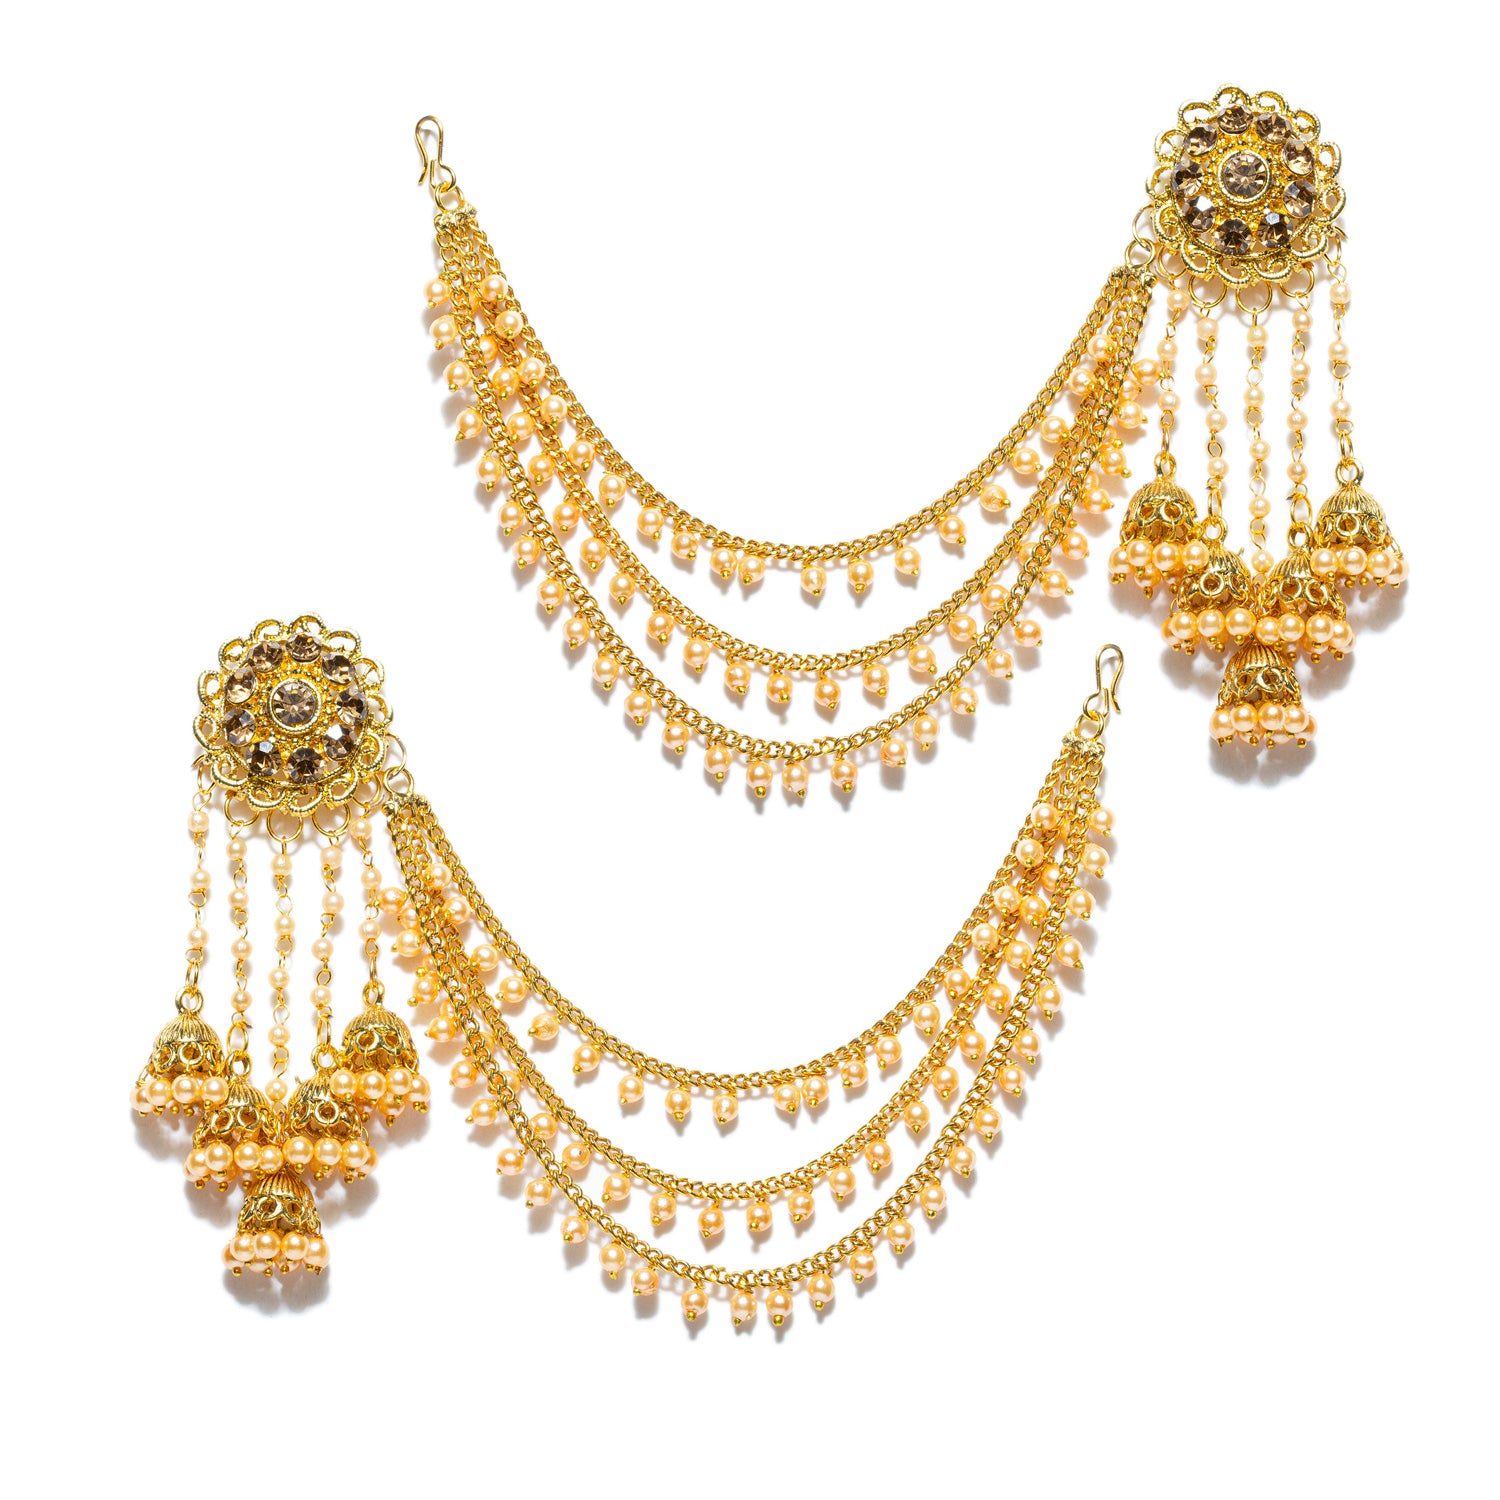 Saharay Earrings Bahubali Earrings Earrings Chain, Golden Jhmuki Earrings  Indian Jewellery, Pakistani Jewellery Asian Jewellery - Etsy